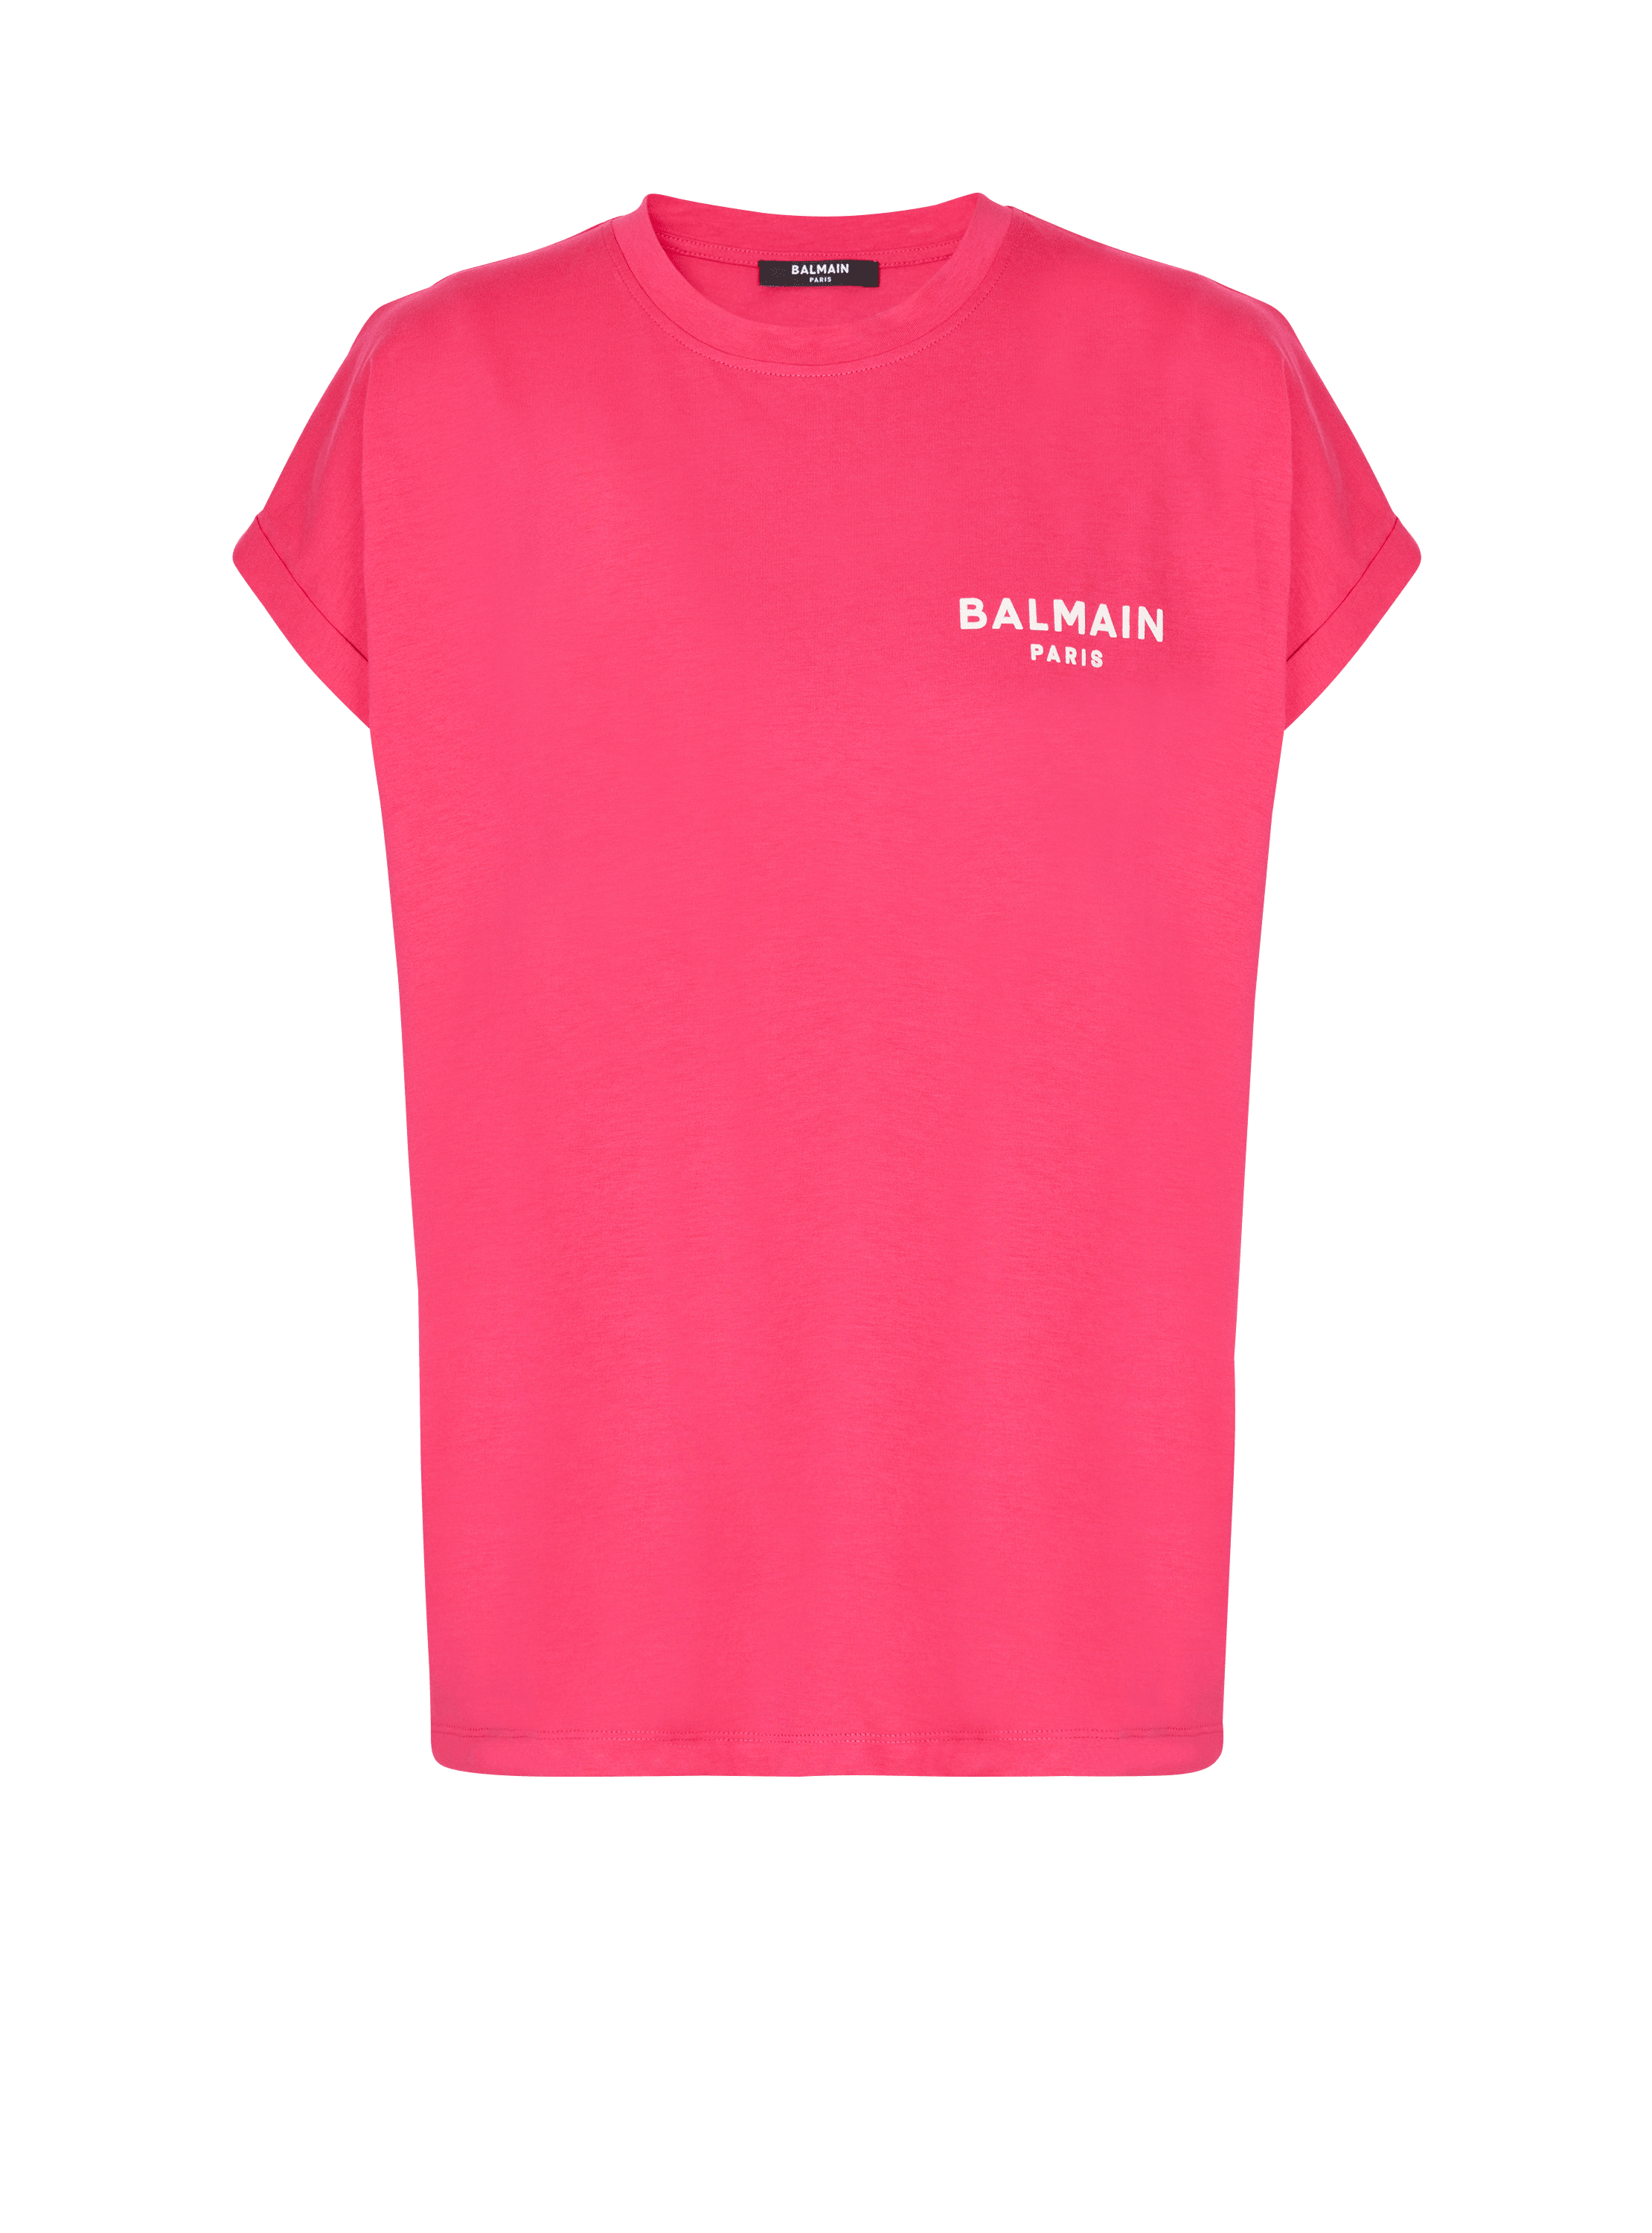 Balmain フロック Tシャツ